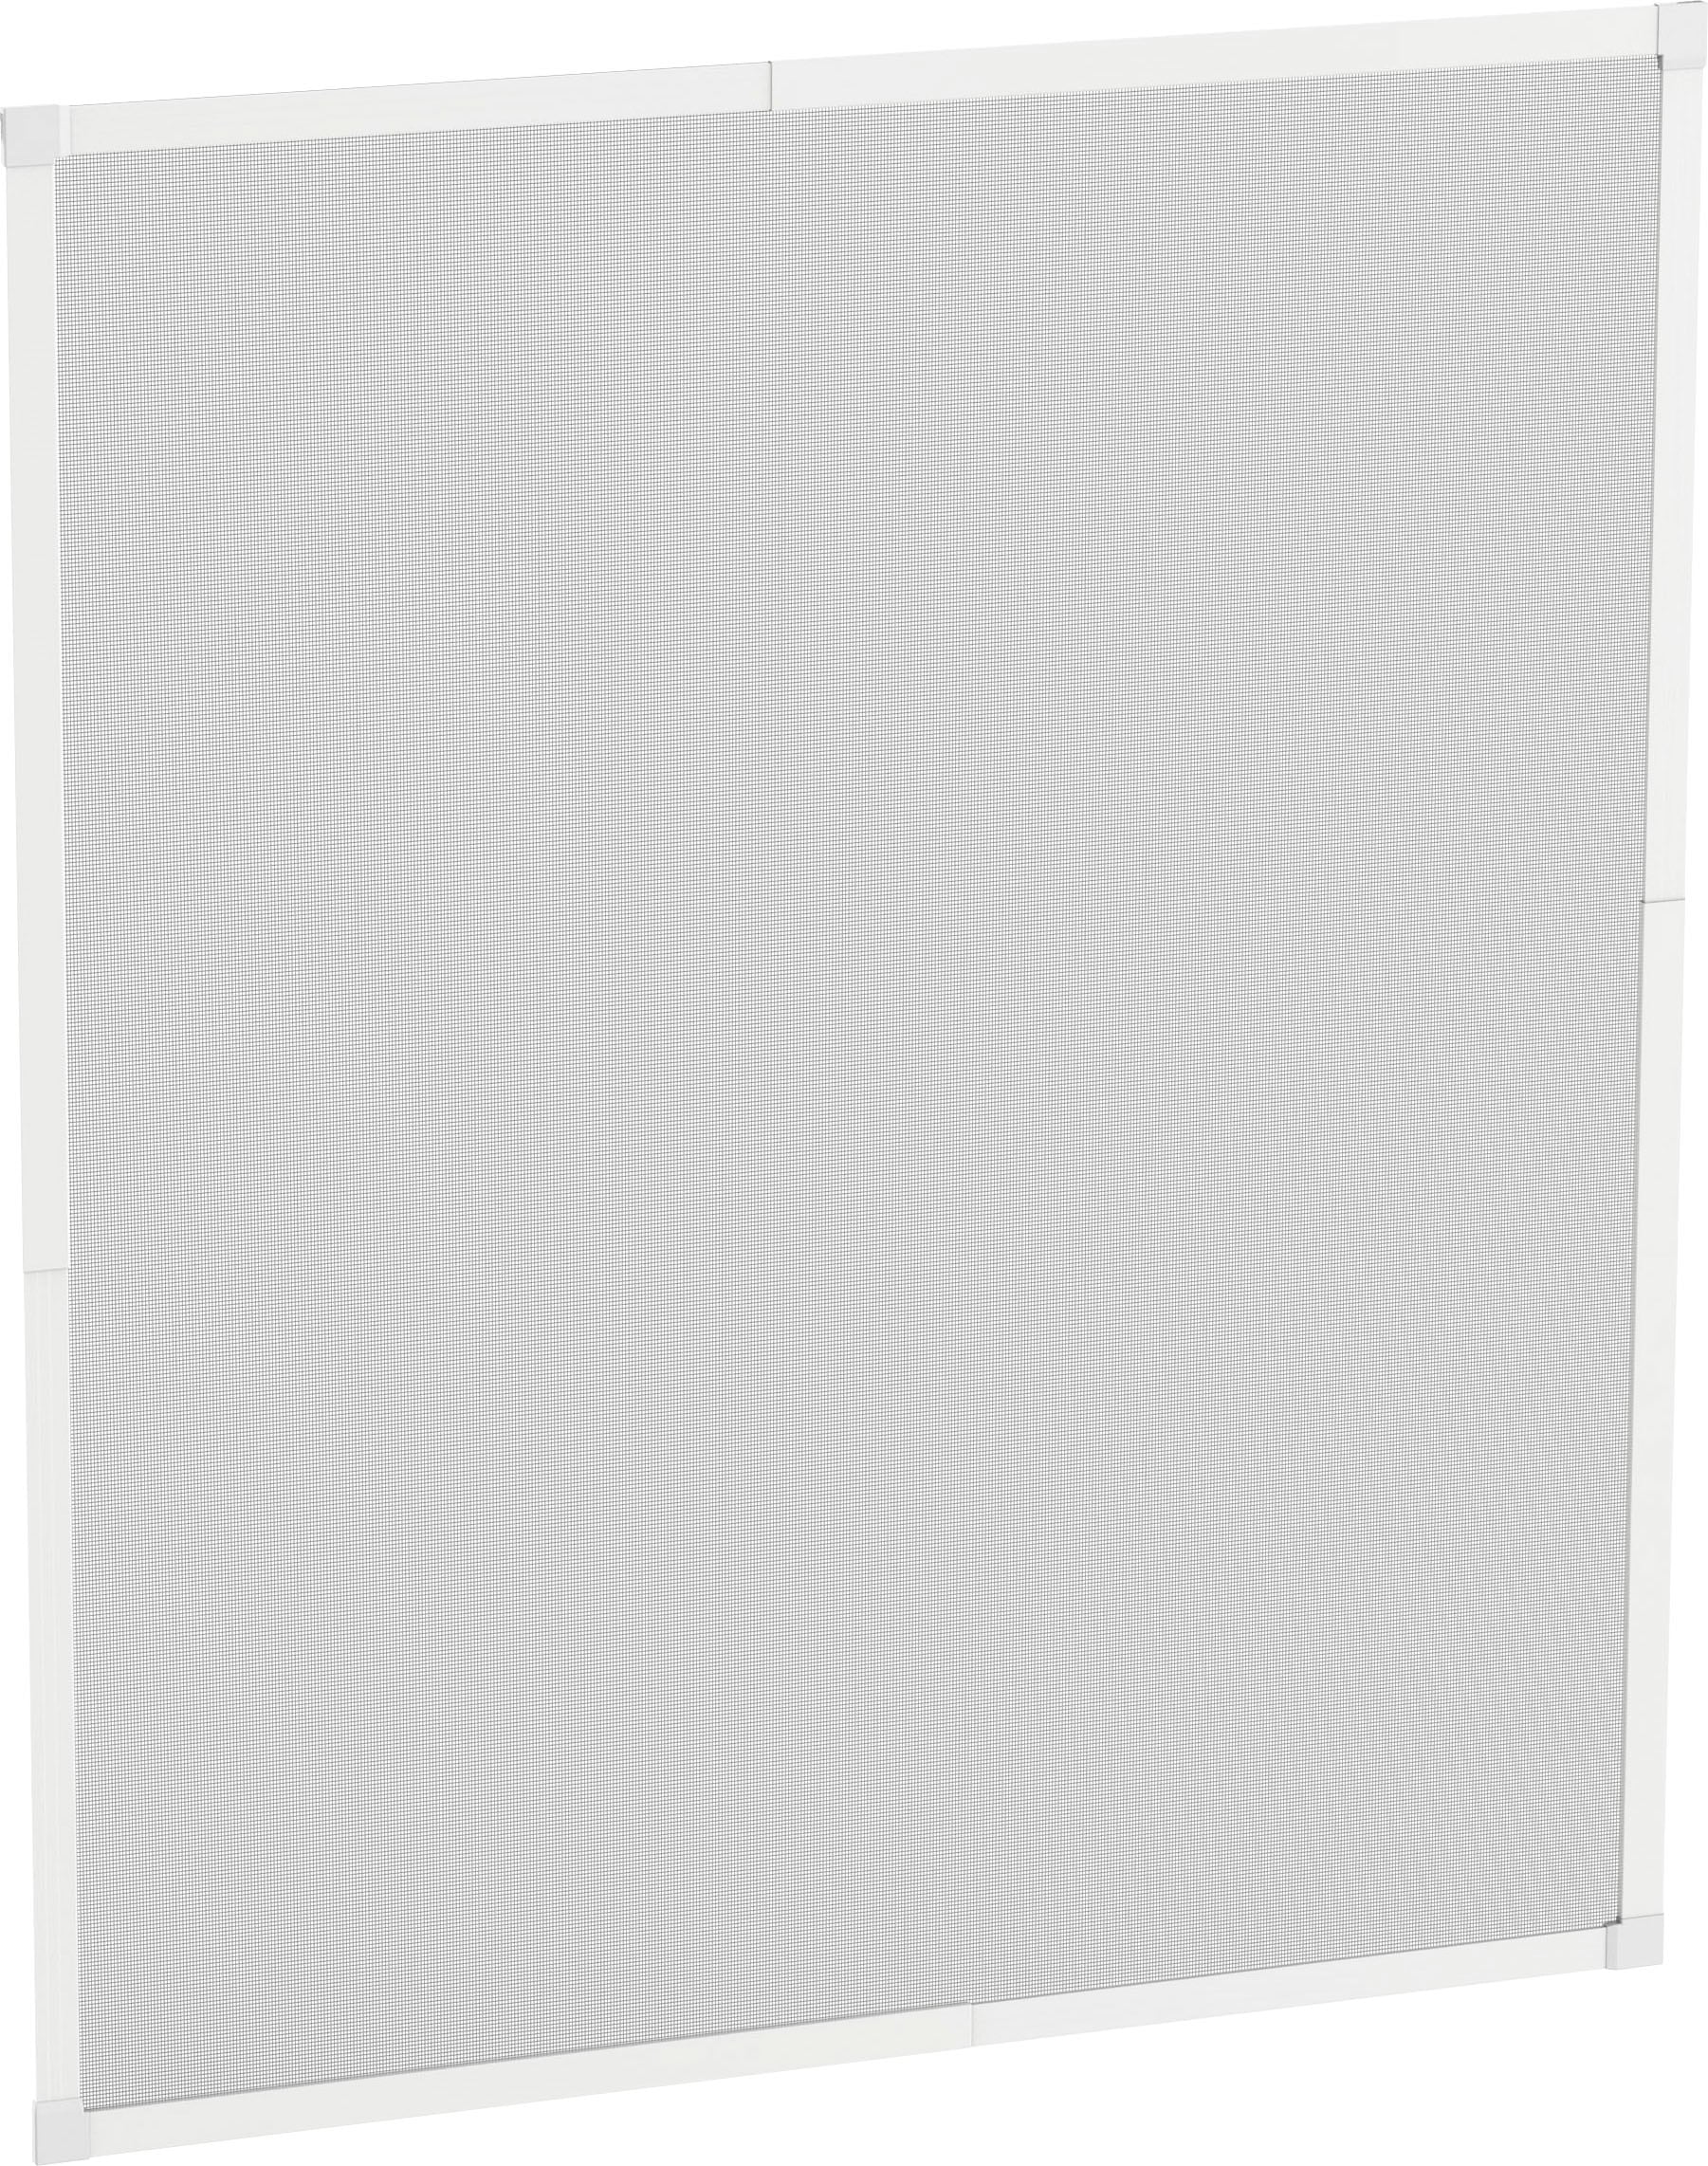 Insektenschutz-Fensterrahmen »START«, weiß/anthrazit, BxH: 120x140 cm